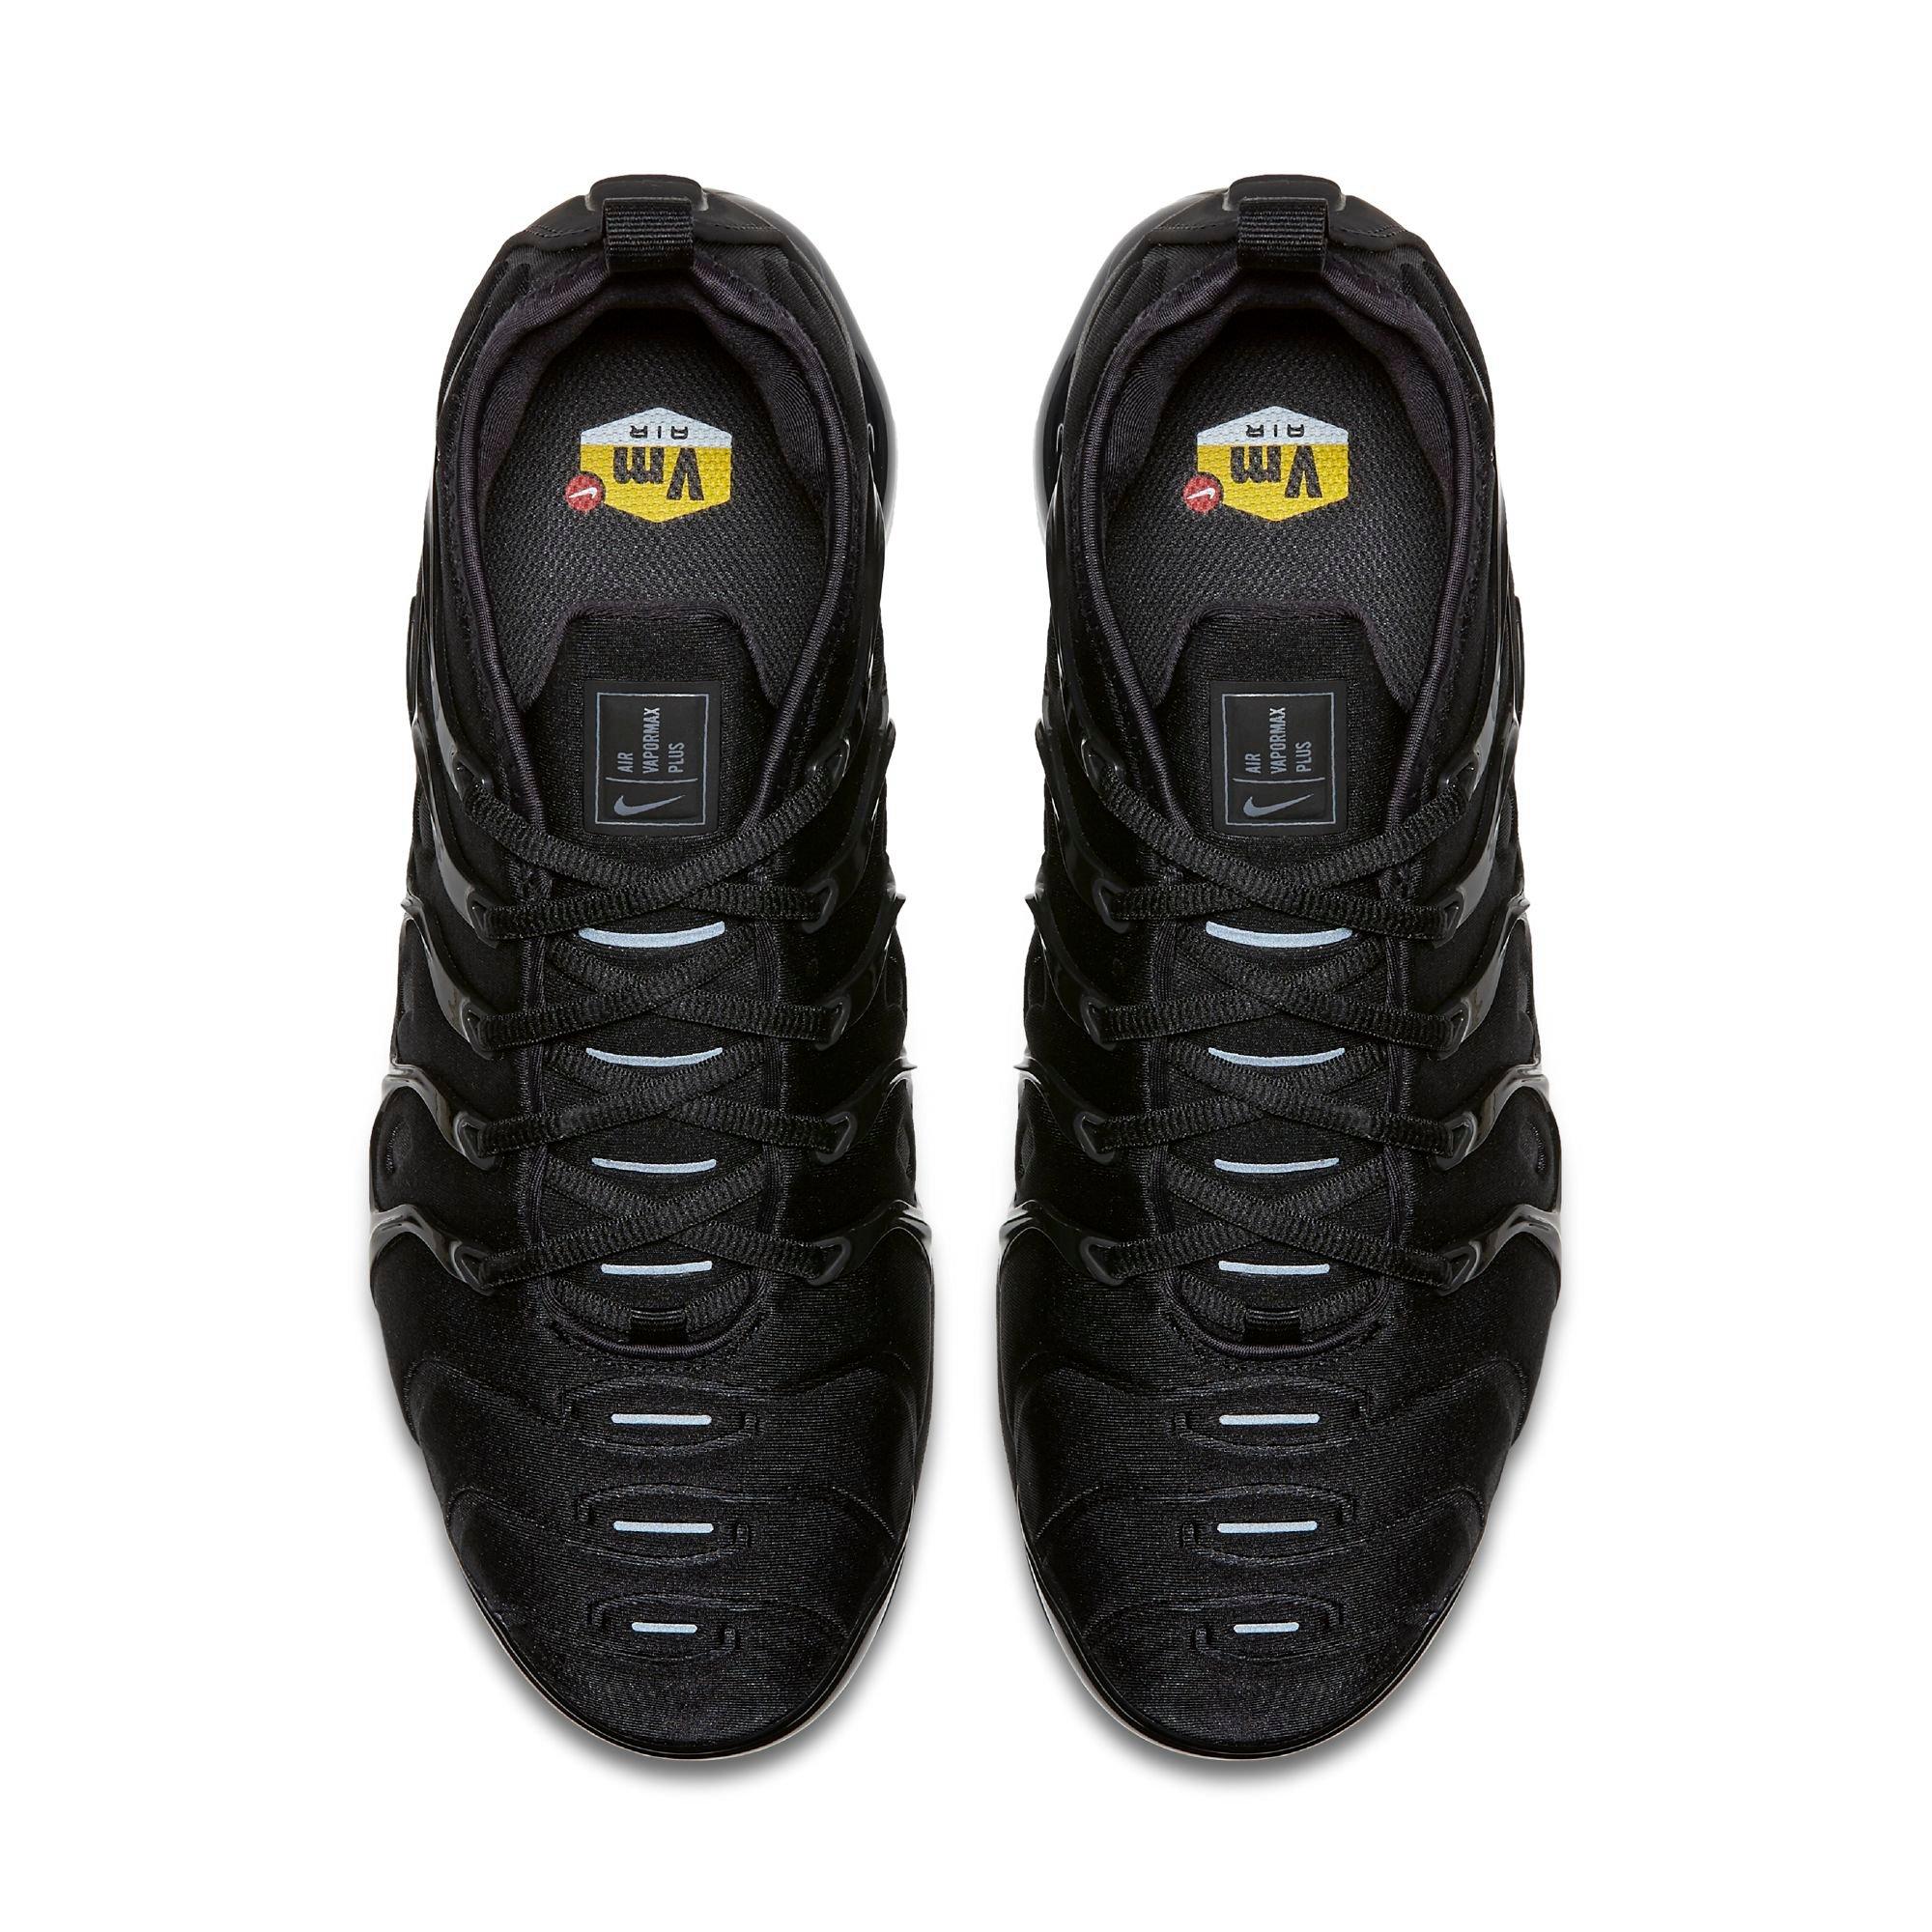 barrer evolución Inconsciente Nike Air VaporMax Plus "Black" Men's Shoe